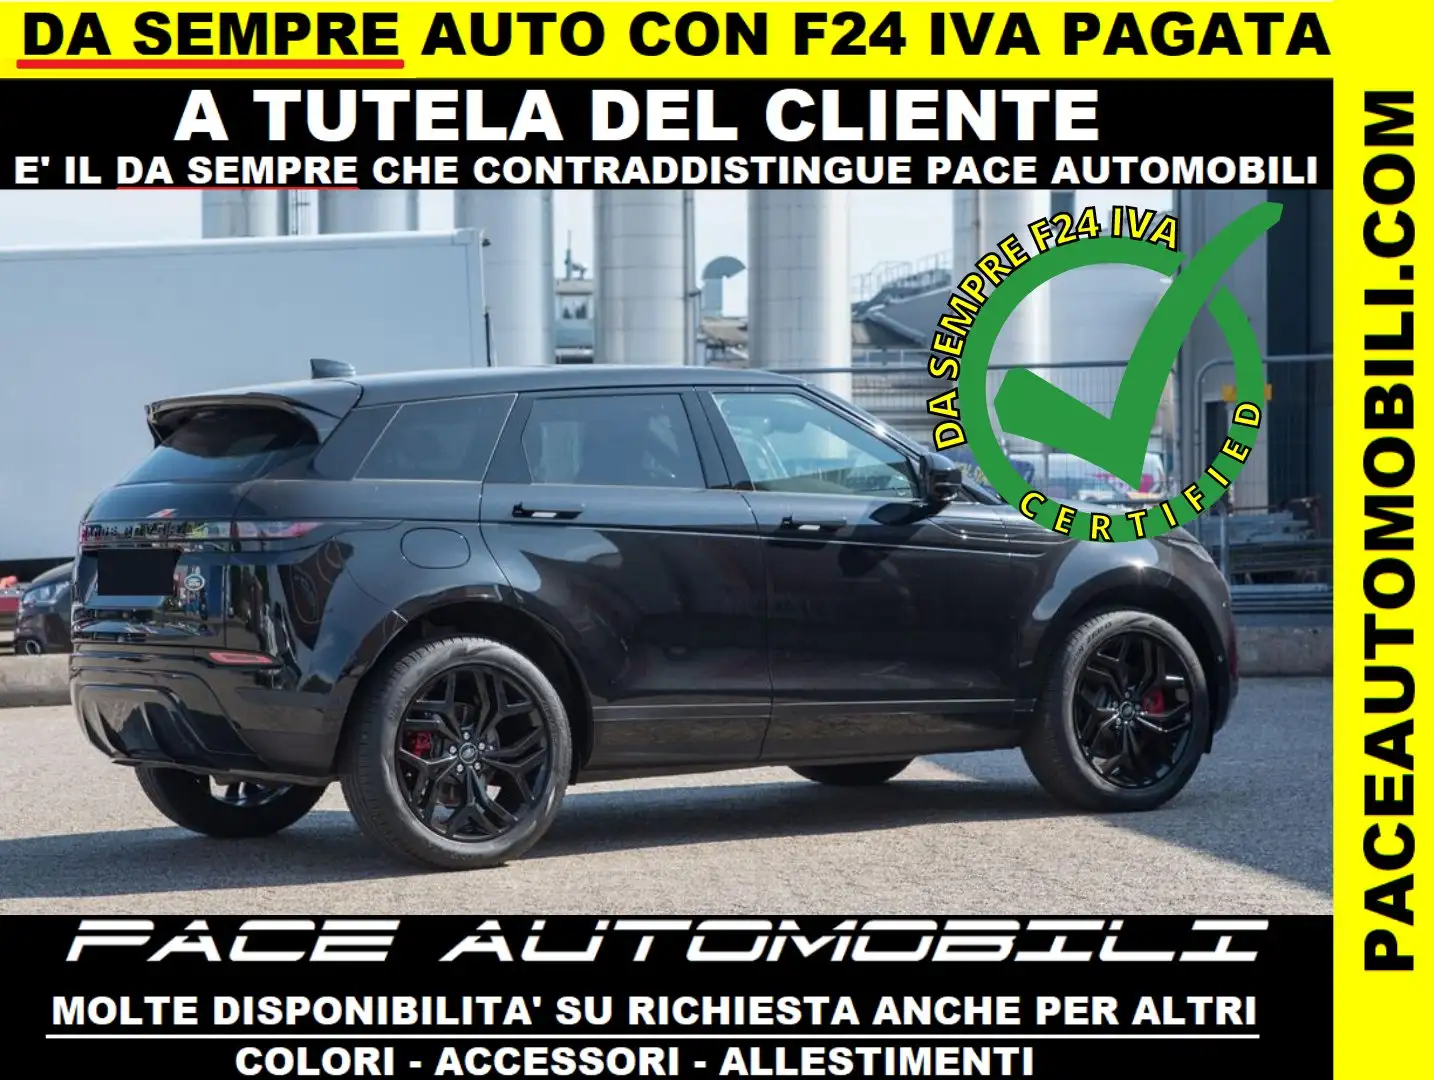 Land Rover Range Rover Evoque usata a Artena – Roma per € 47.400,-